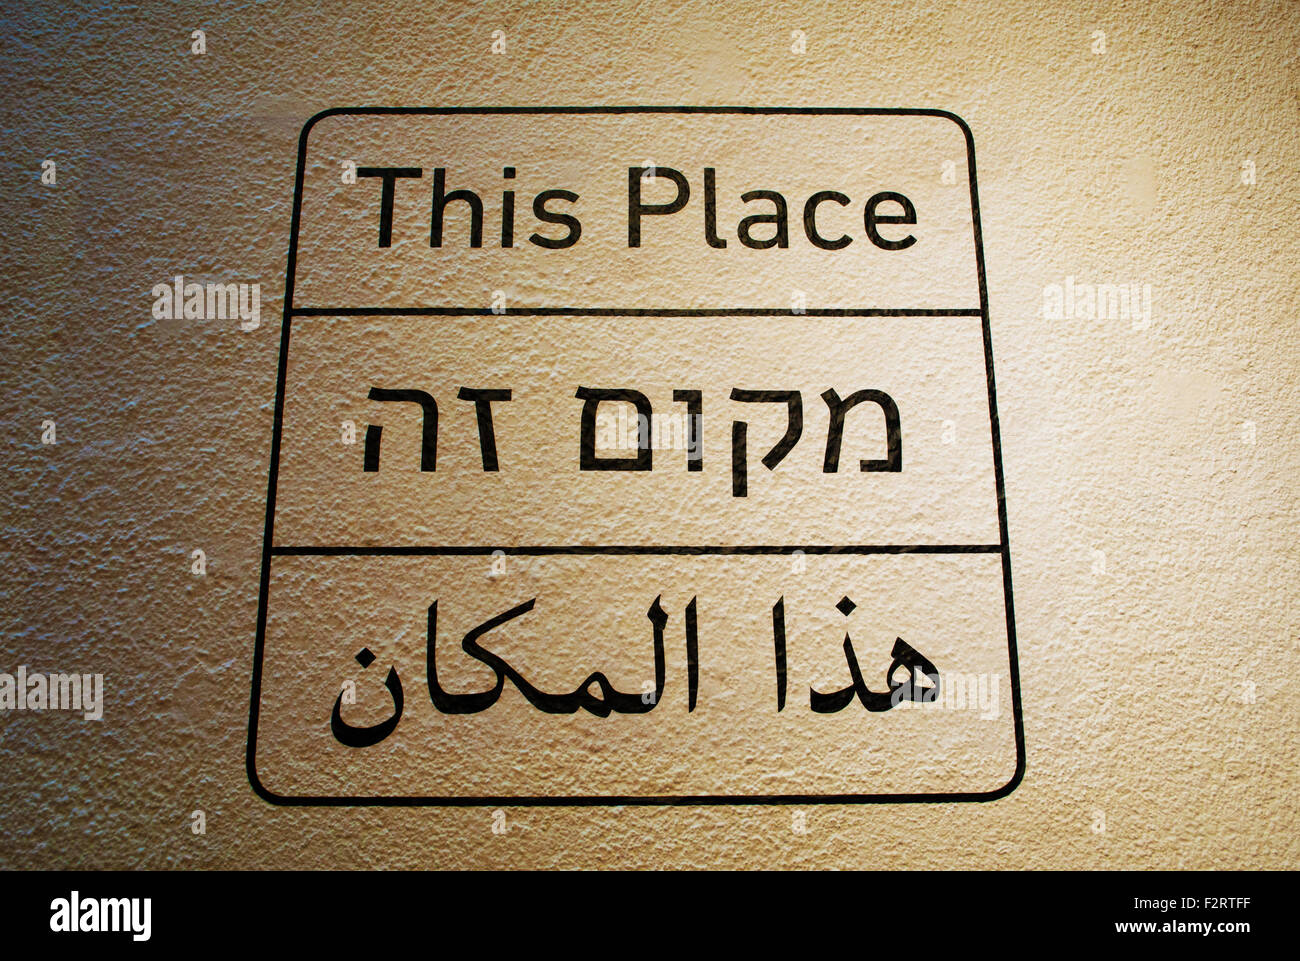 Tel Aviv Museum of Art, arte contemporanea, Yafo, Israele, segno, del segnale di indicazione, questo luogo sign in ebraico, inglese e arabo Foto Stock